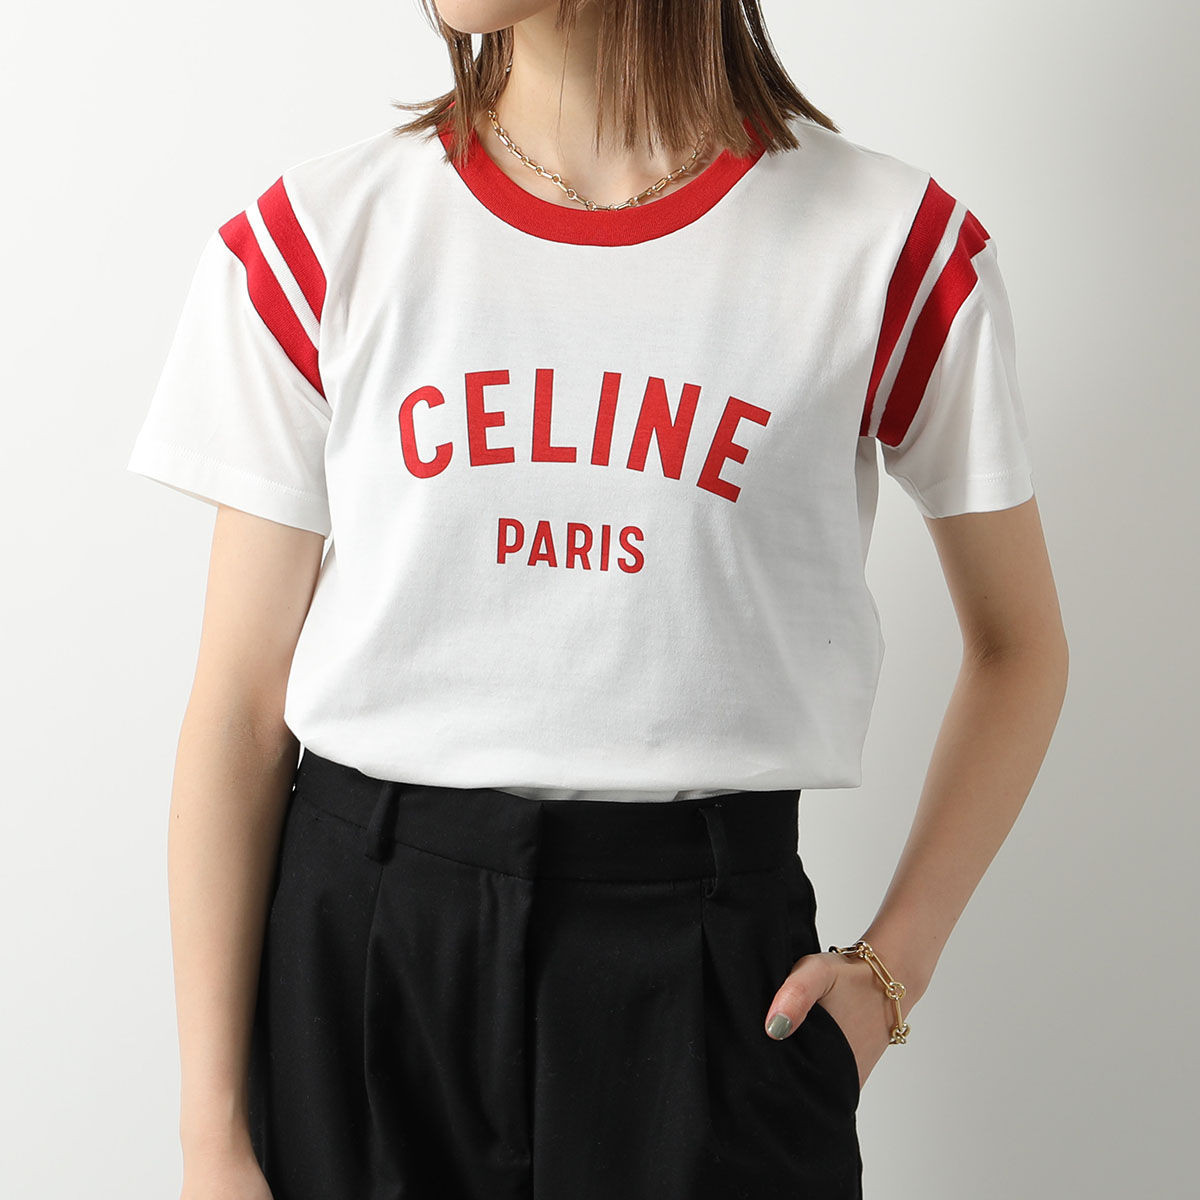 CELINE セリーヌ Tシャツ 2X76G671Q.01PX レディース 半袖 カットソー ロゴT クルーネック コットン ホワイト×レッド